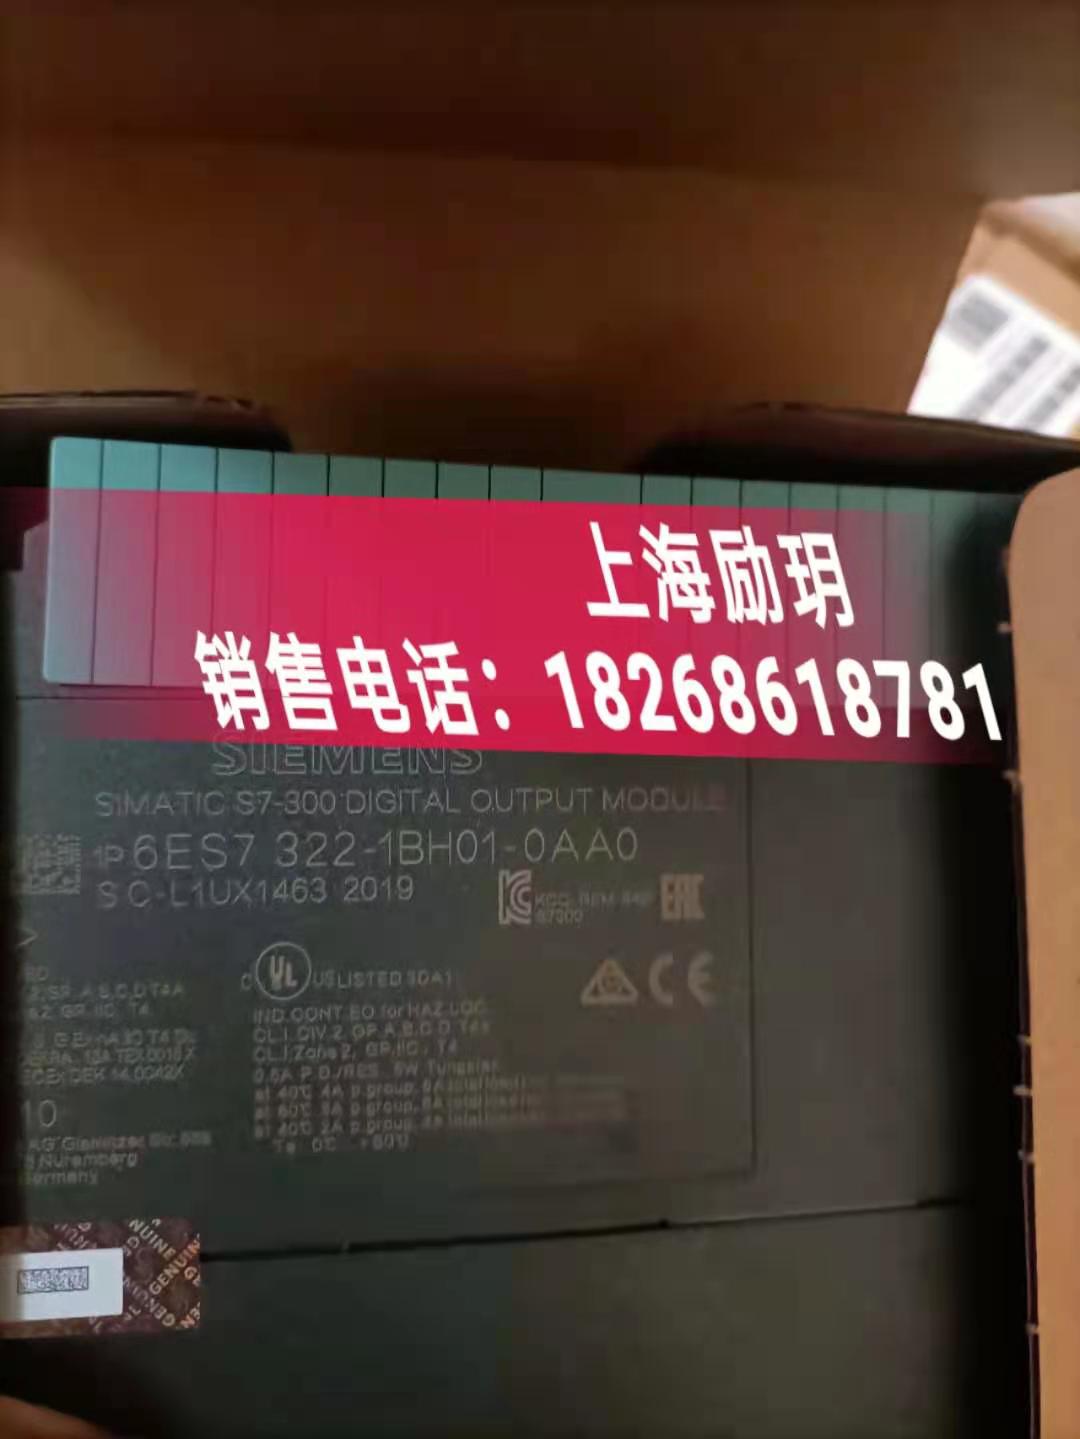 西门子福建省代理商模块代理商-电缆代理商上海励玥